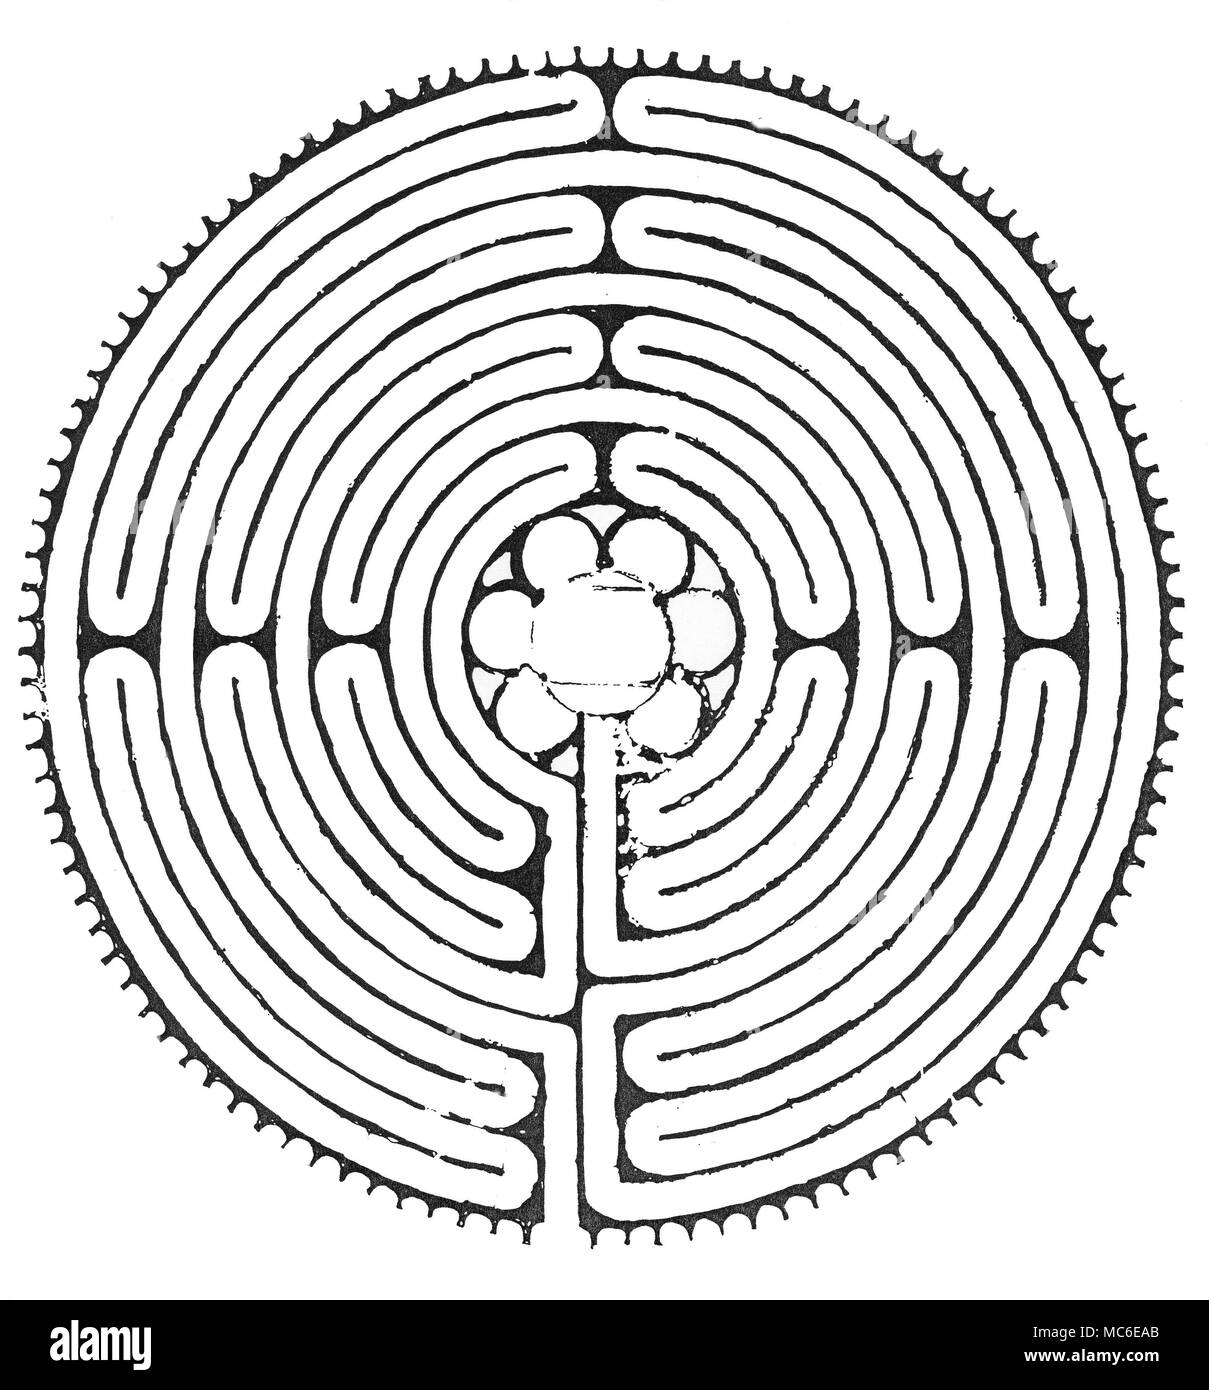 Labyrinthe - chartres - Labyrinth, in das Kirchenschiff der Kathedrale von Chartres ist wirklich eine tanzende Masse - Man kann nicht im Folgenden eine schlängelnde Linien verloren. Vom Startpunkt aus, ist man unweigerlich zum Zentrum, wo in früheren Zeiten gab es eine Messingplakette Lager ein Bild von Theseus Kampf gegen den Minotaurus führen. Design aus dem 13. Jahrhundert. Stockfoto